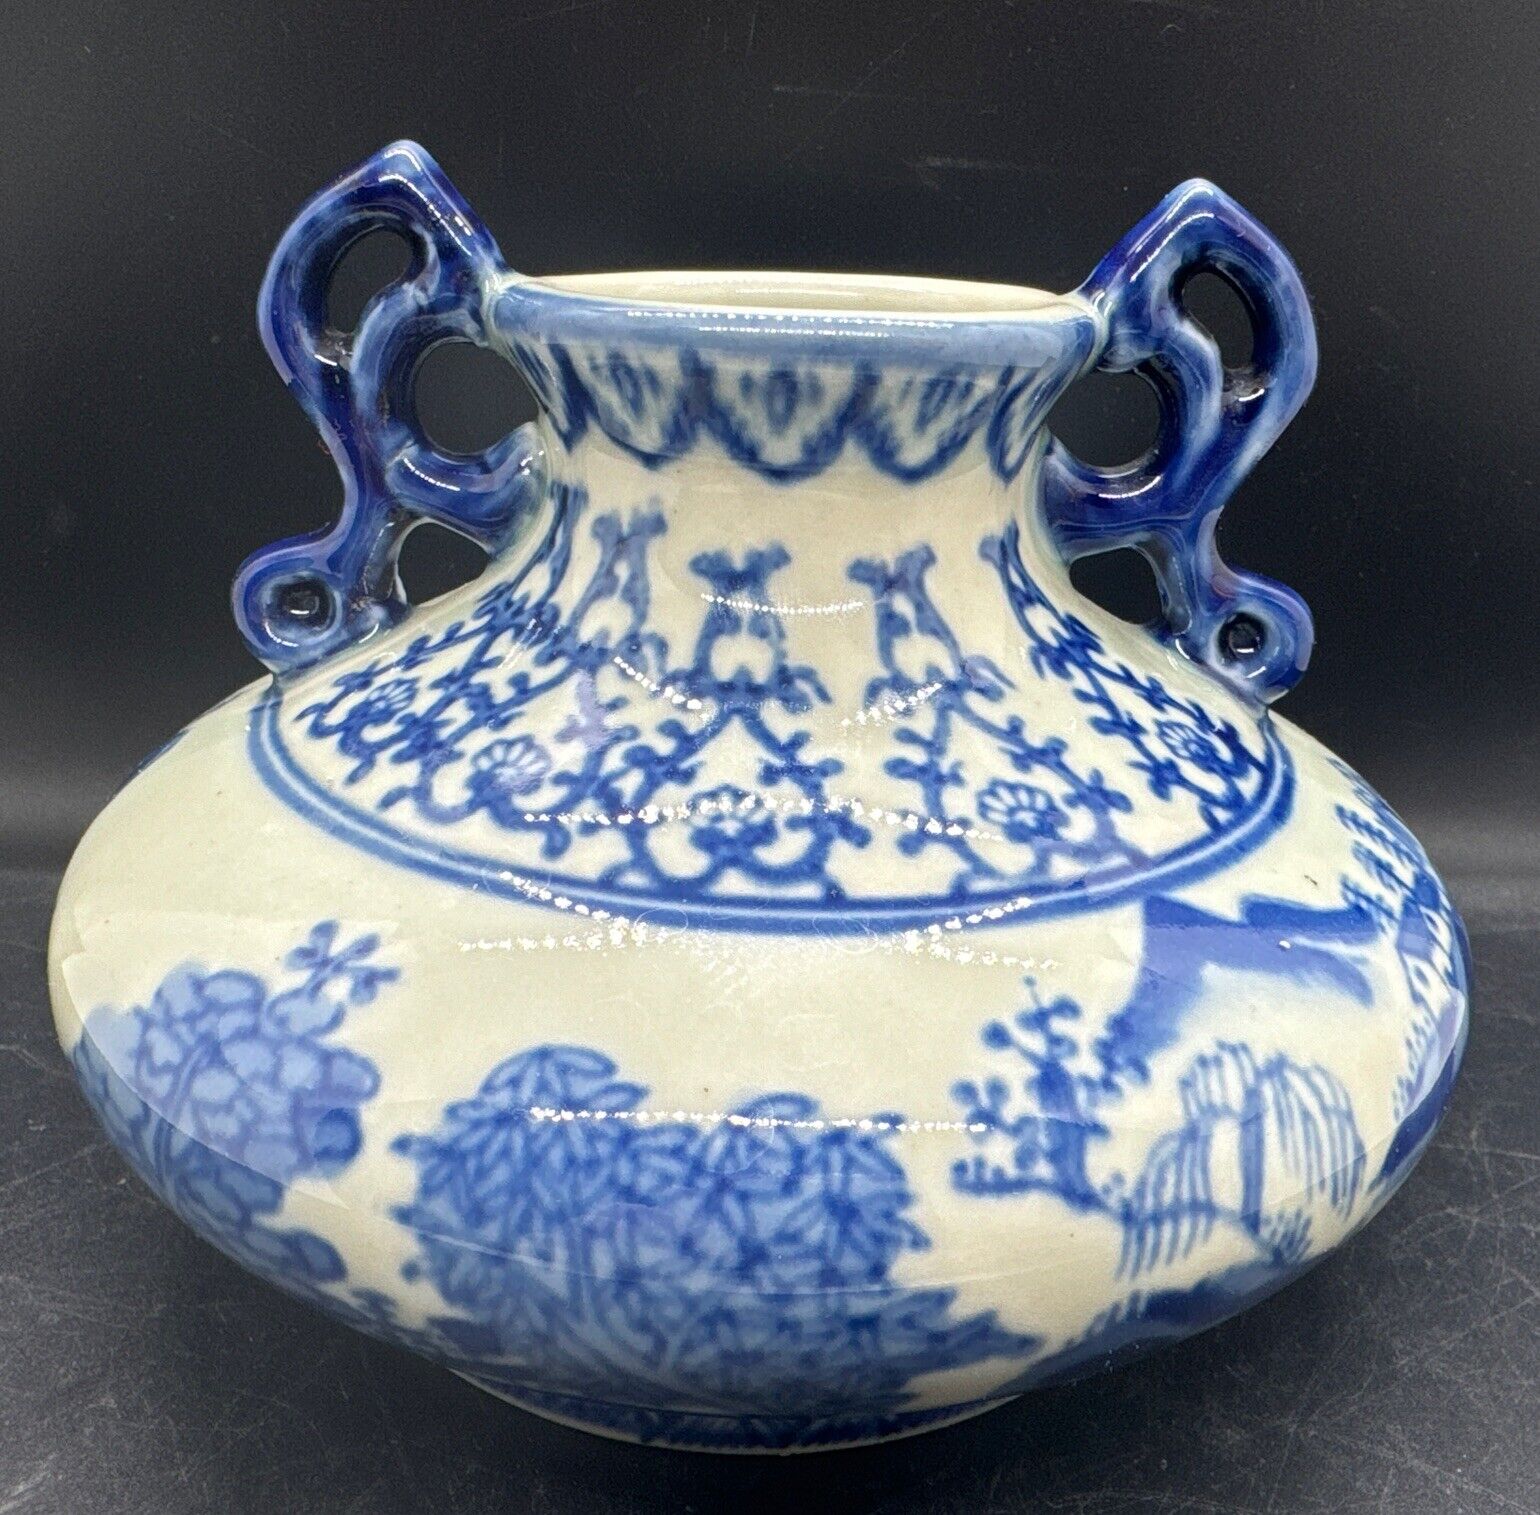 VTG Heavy Asian Blue And White Vase 4.25” High